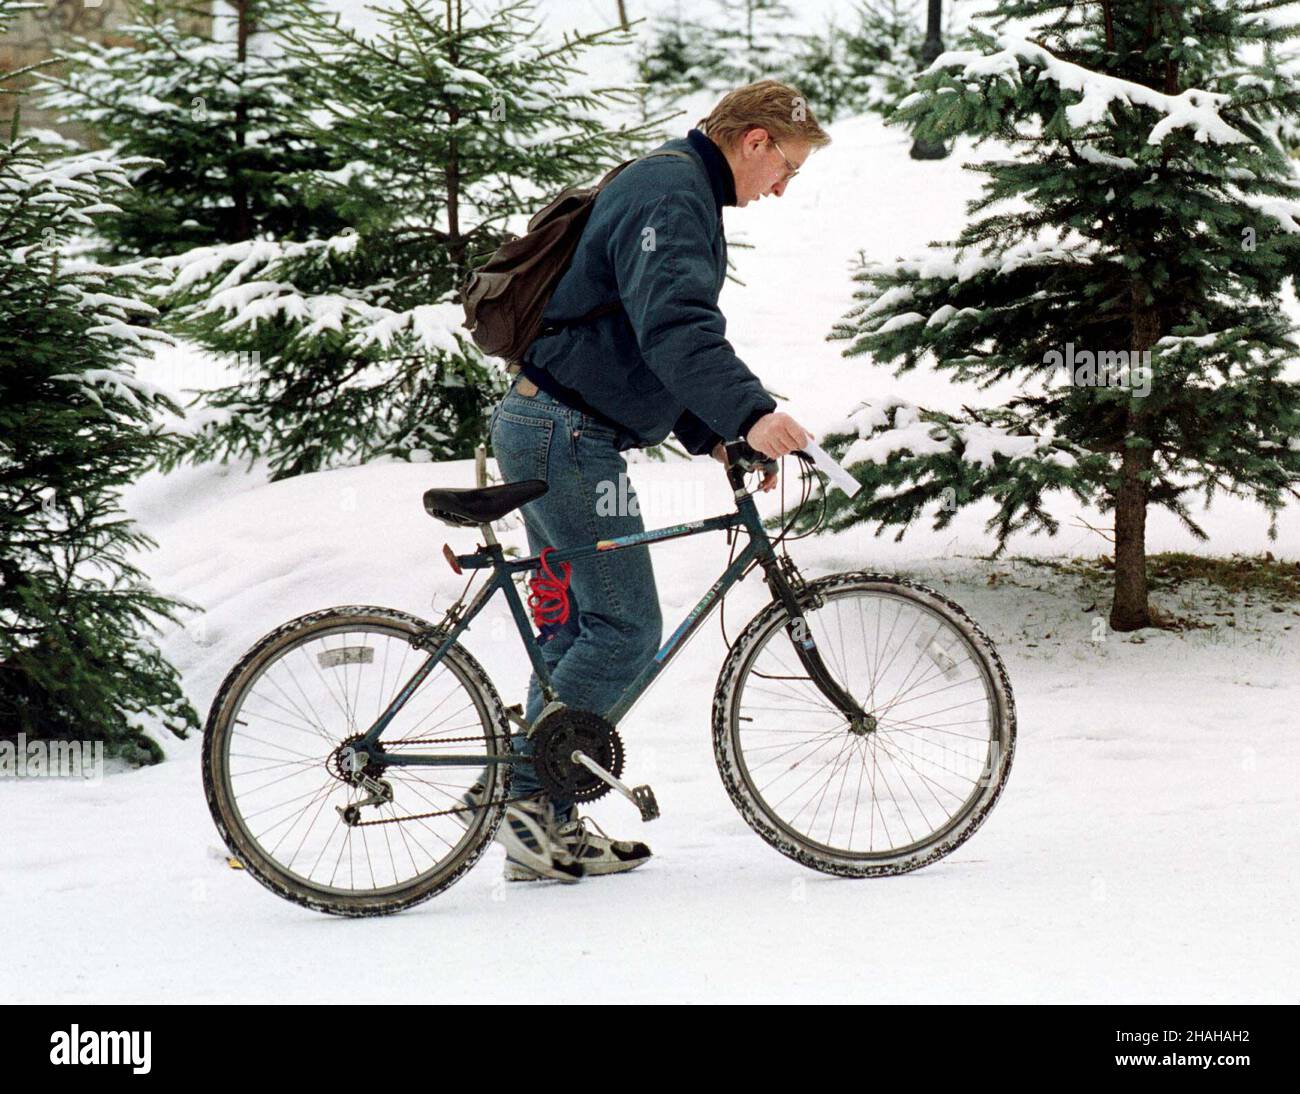 RABKA, 29.12.1999. Ciê¿kie czasy dla cyklistów. (sr.) PAP/Jacek Bednarczyk RABKA, 29.12.1999. Temporada dura para los amantes de las bicicletas. (sr.) PAP/Jacek Bednarczyk Foto de stock